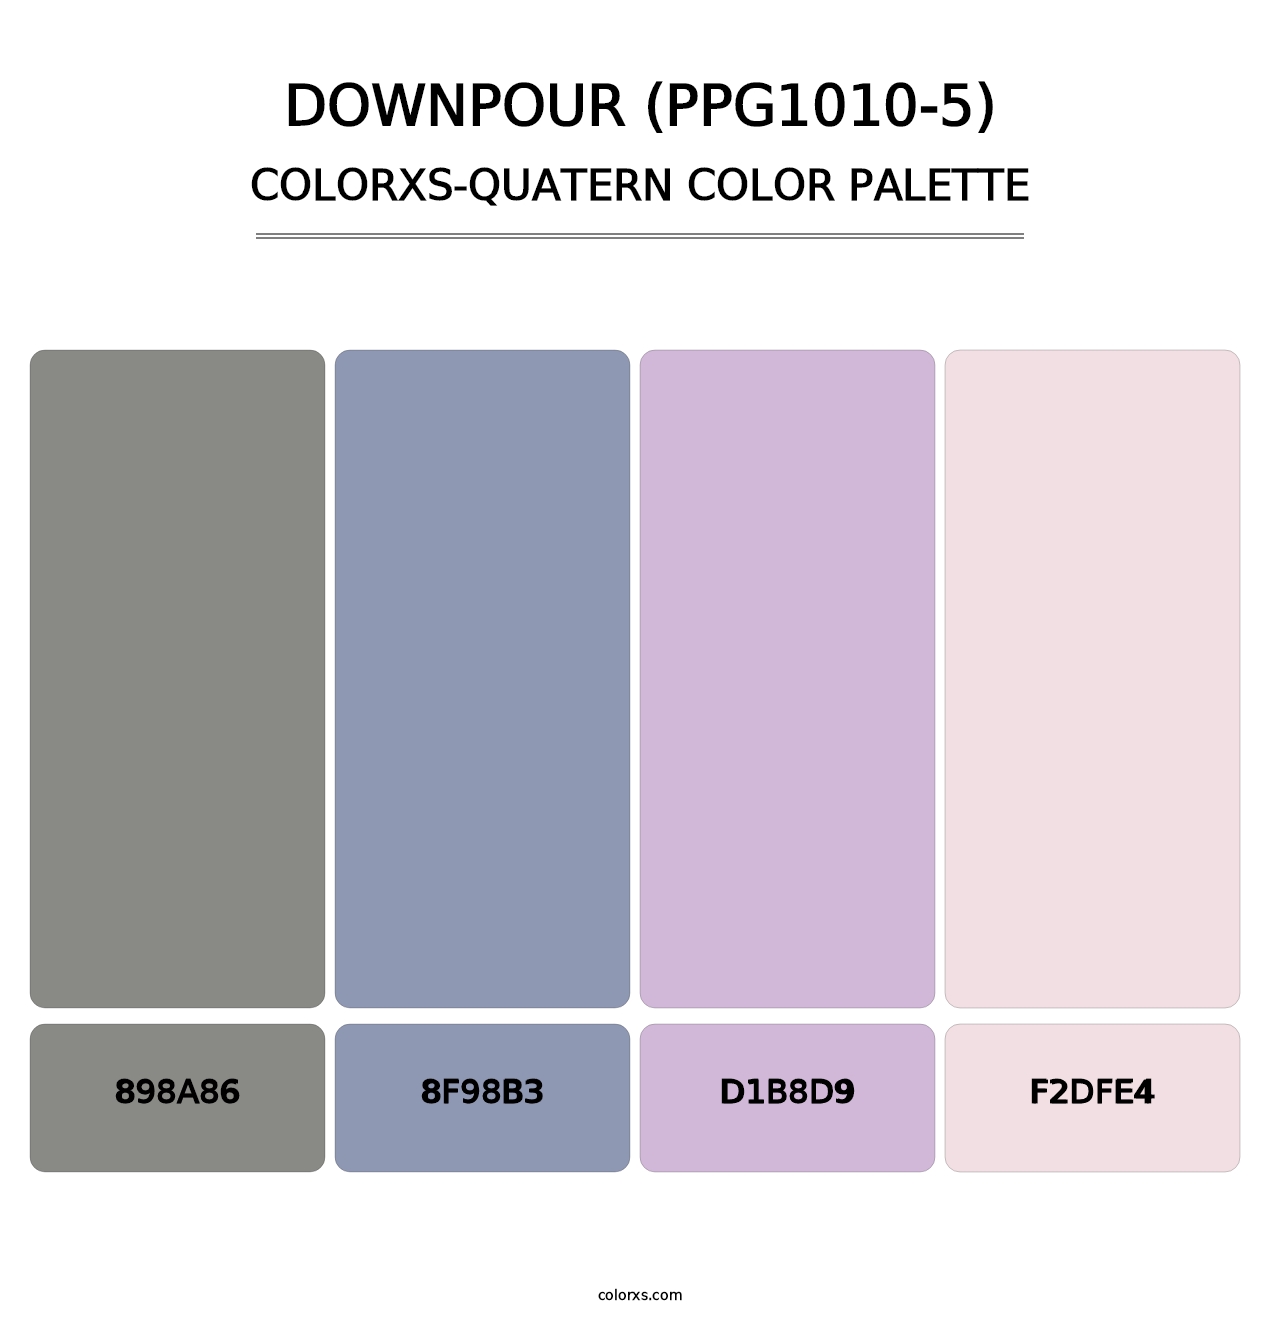 Downpour (PPG1010-5) - Colorxs Quatern Palette